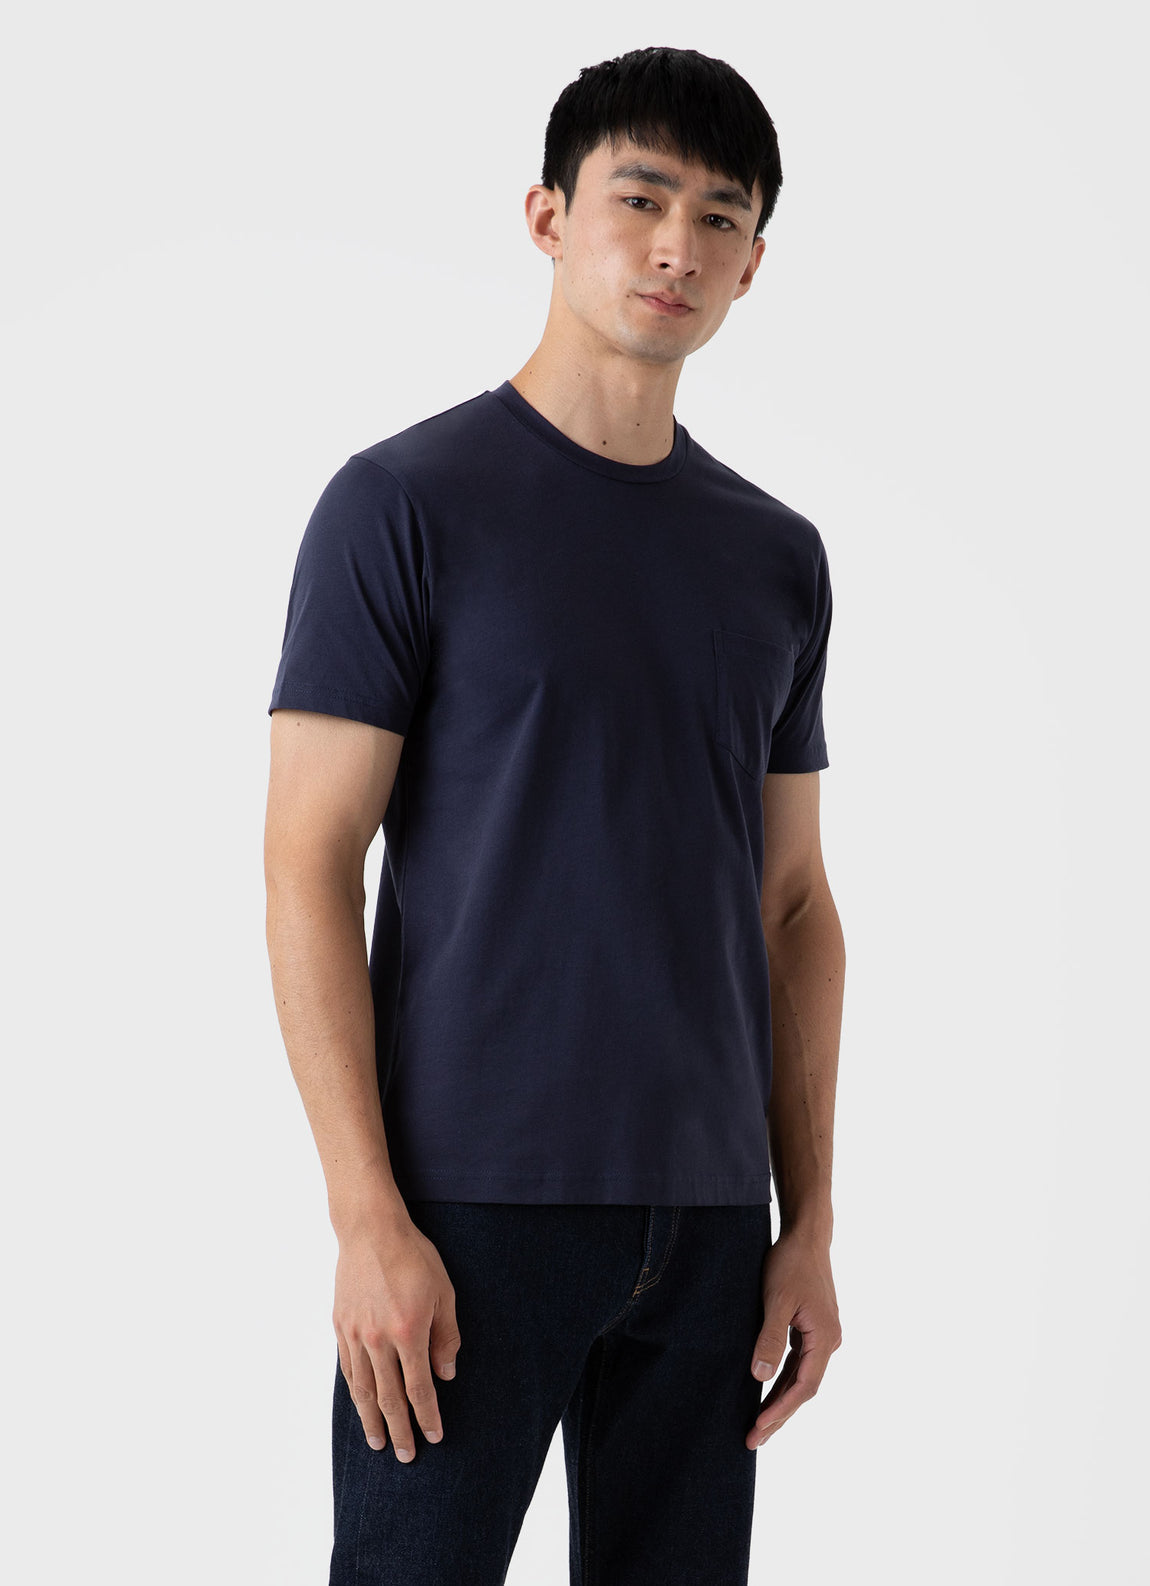 Men\'s Riviera Midweight Pocket T-shirt in Navy | Sunspel